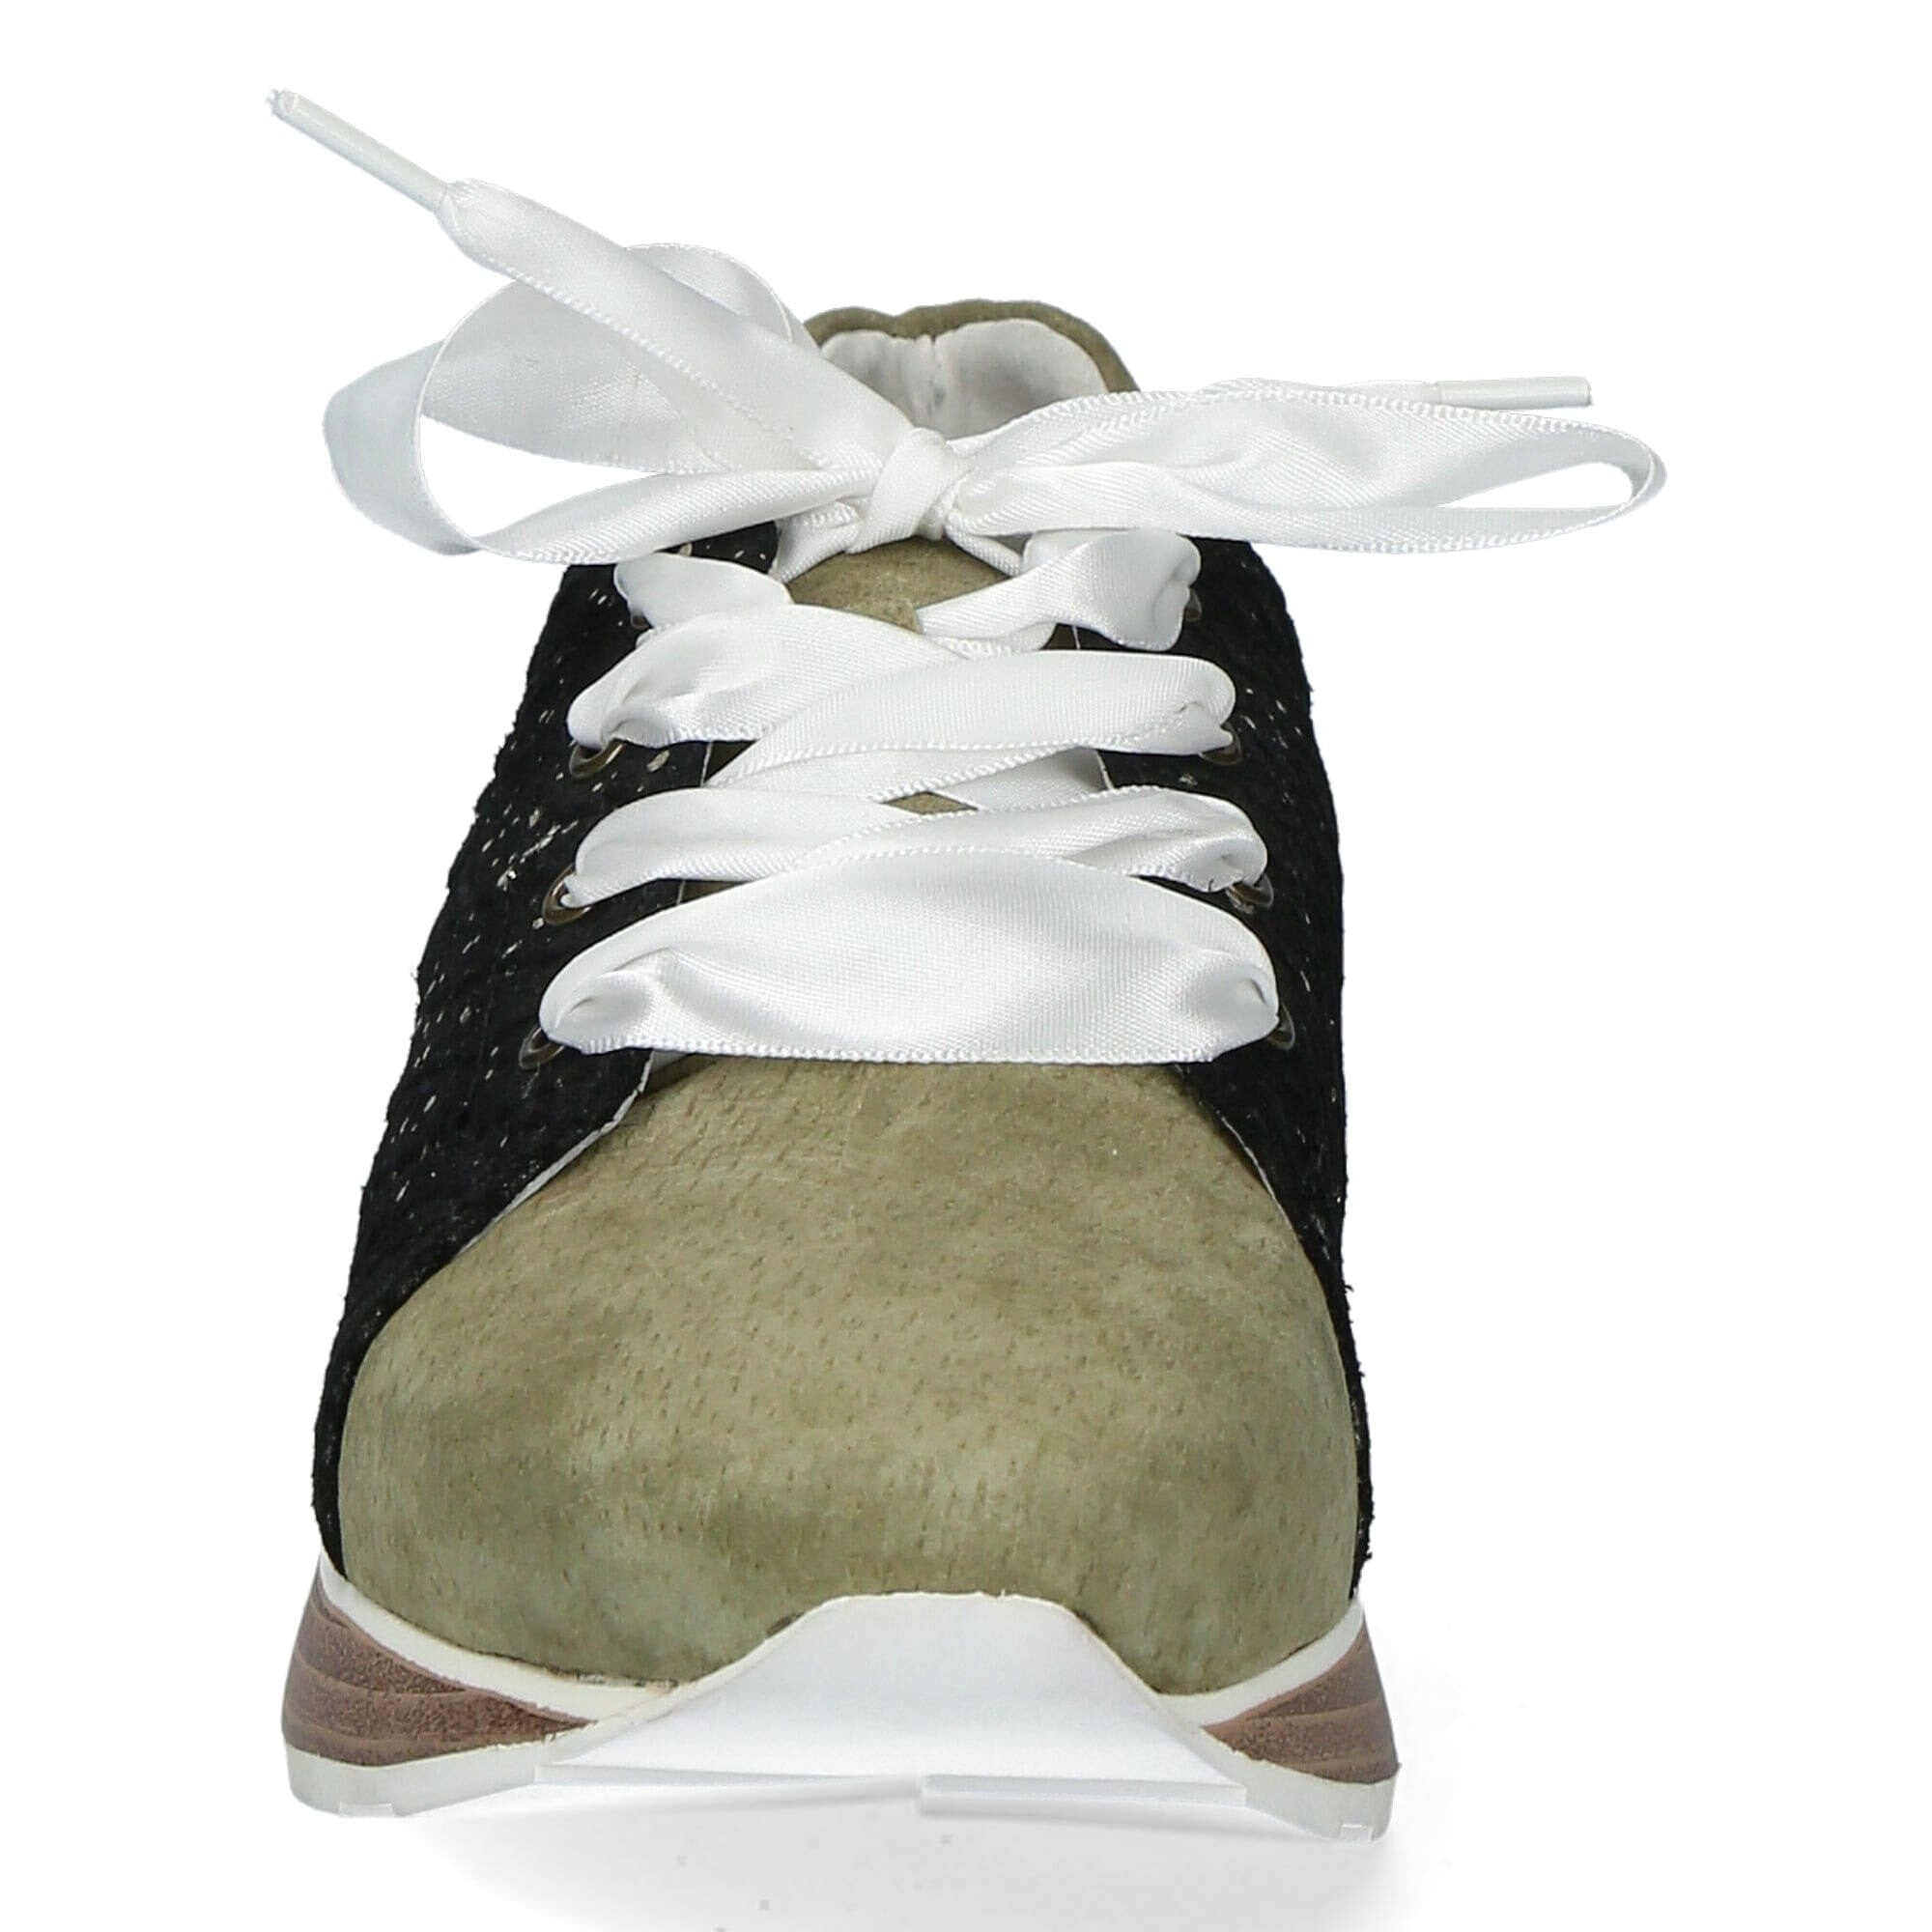 DELTA 01 C Shoes - Loafer